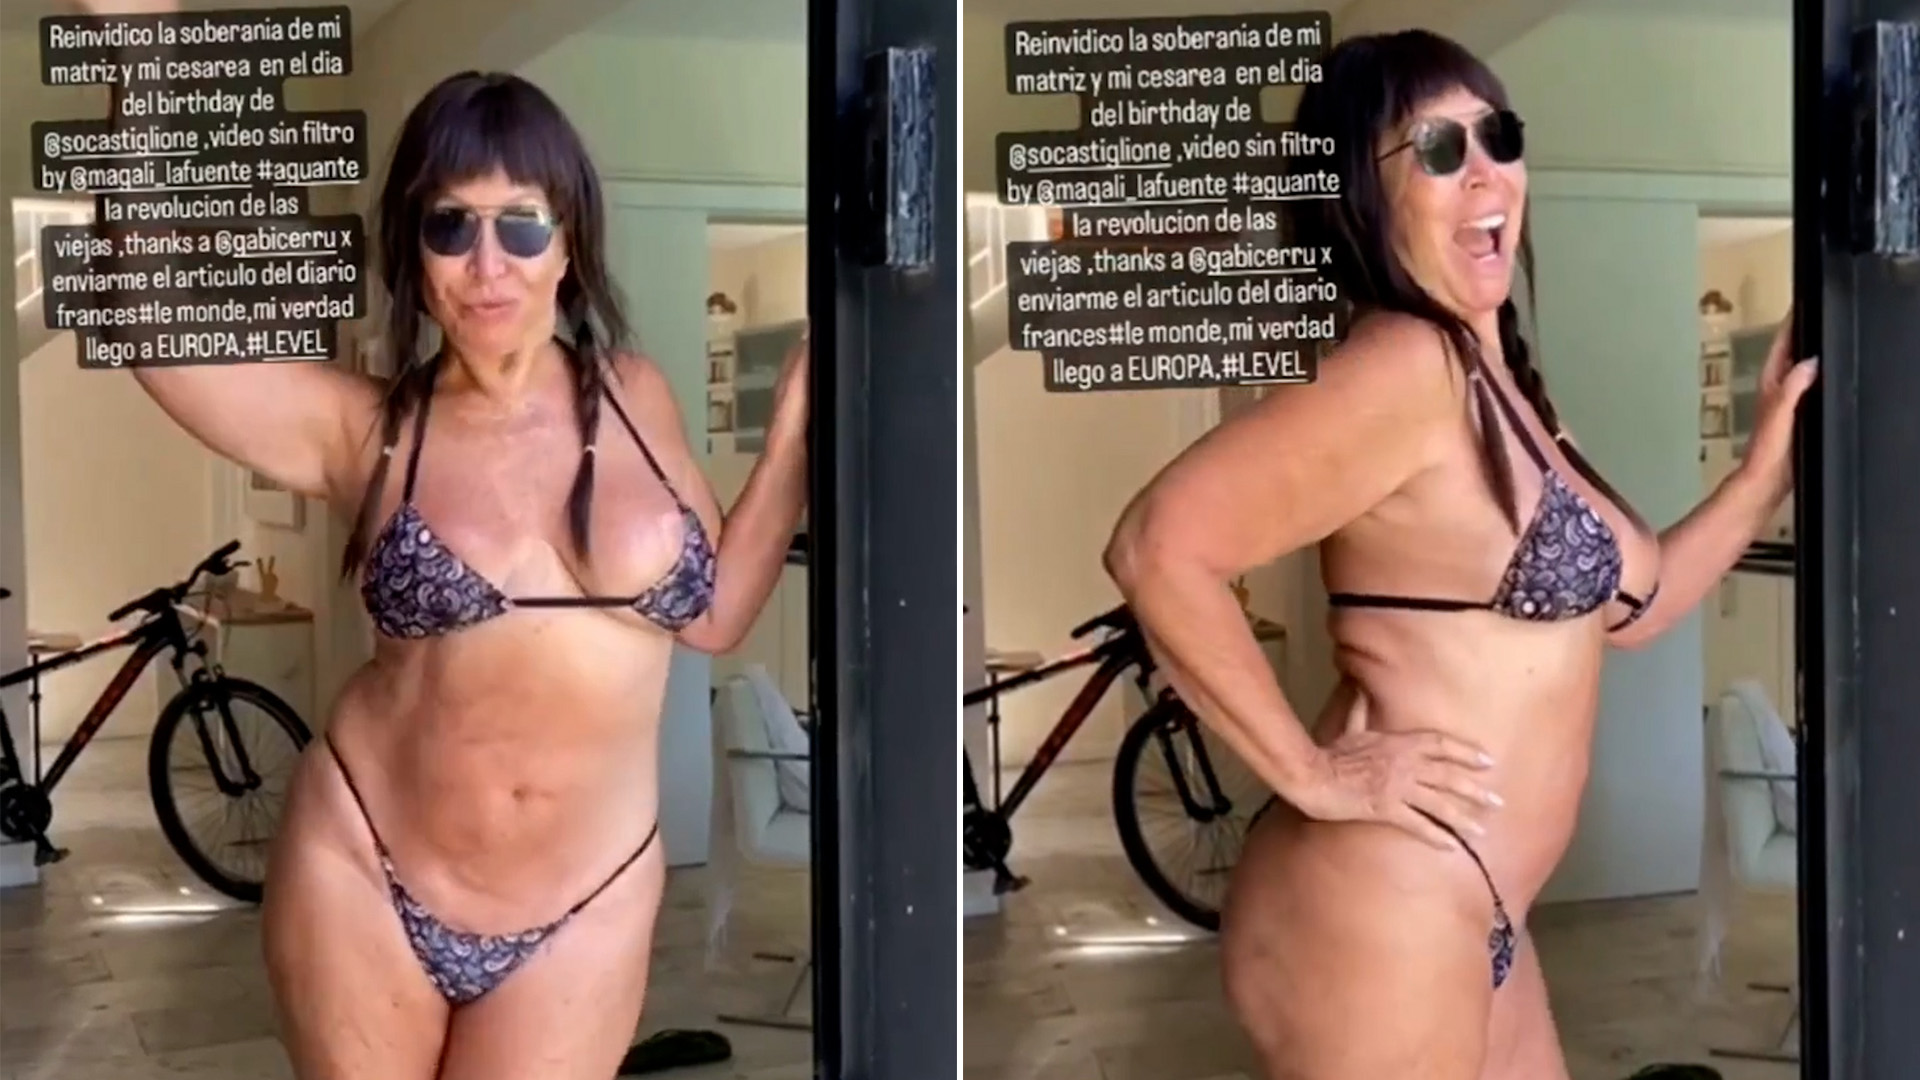 Moria Casán volvió a ser viral al mostrar en un video su cuerpo al natural: “Aguante la revolución de las viejas”